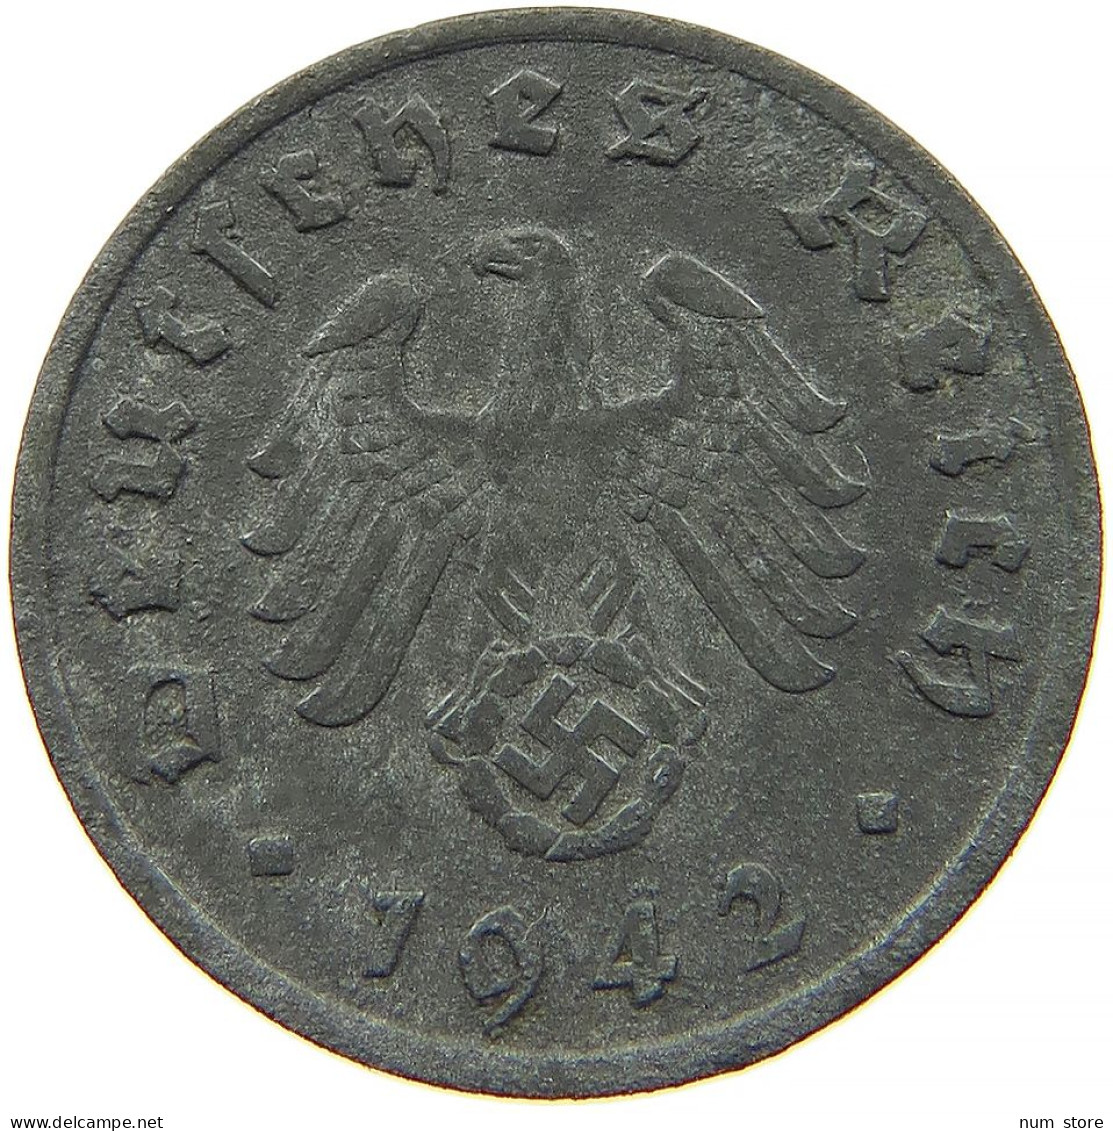 GERMANY 1 REICHSPFENNIG 1942 G #s091 1171 - 1 Reichspfennig